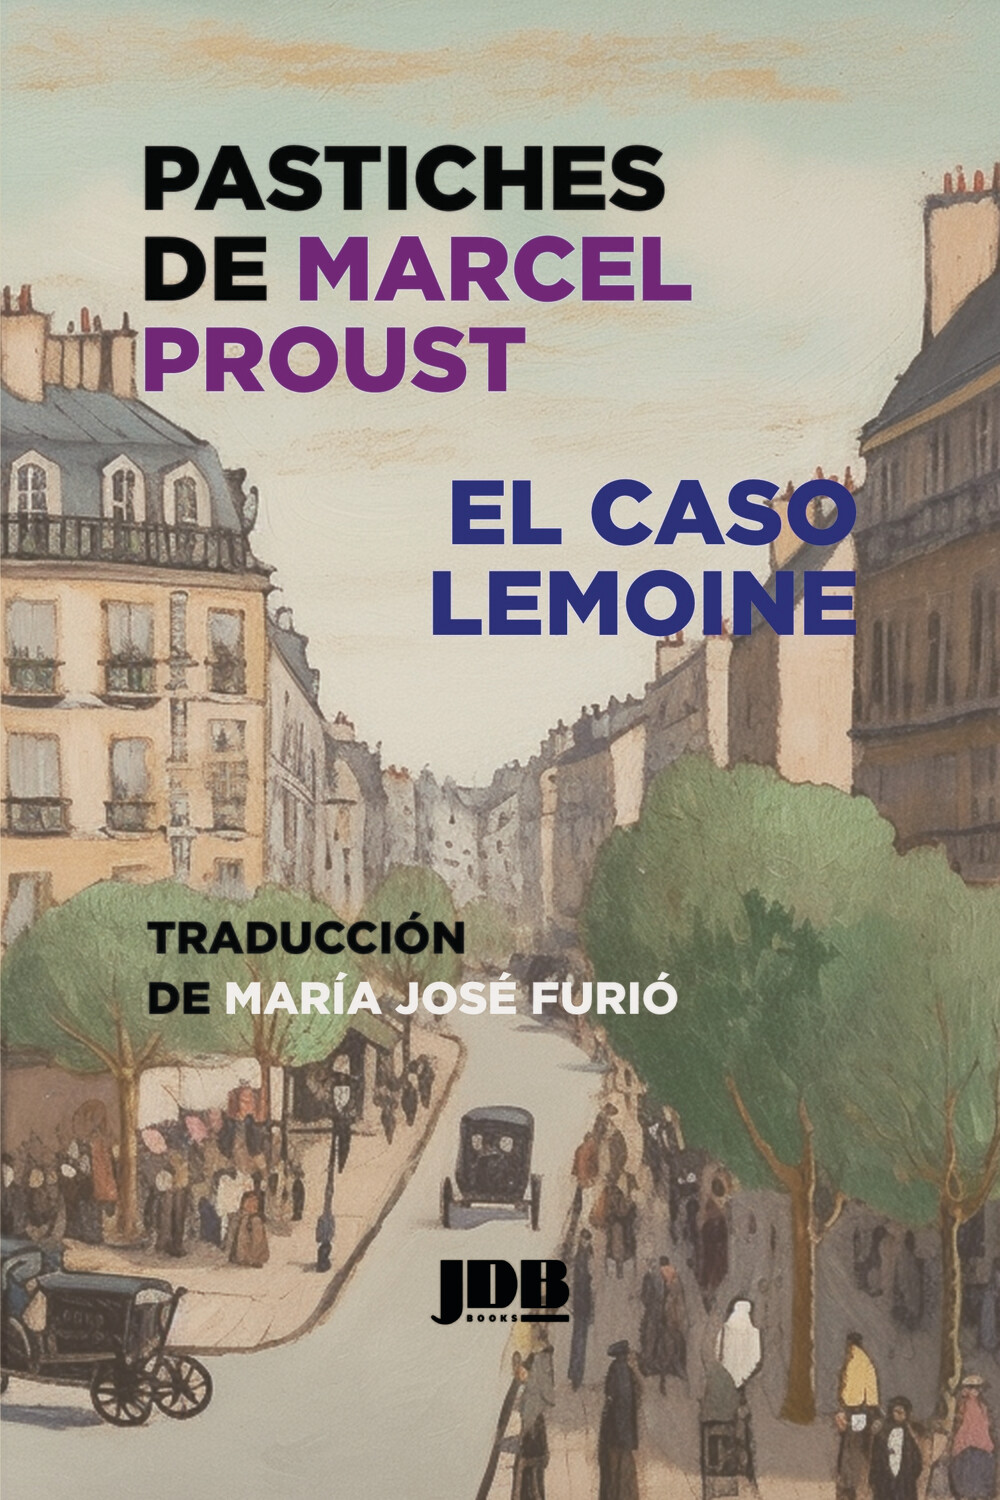 Pastiches de Marcel Proust. El caso Lemoine